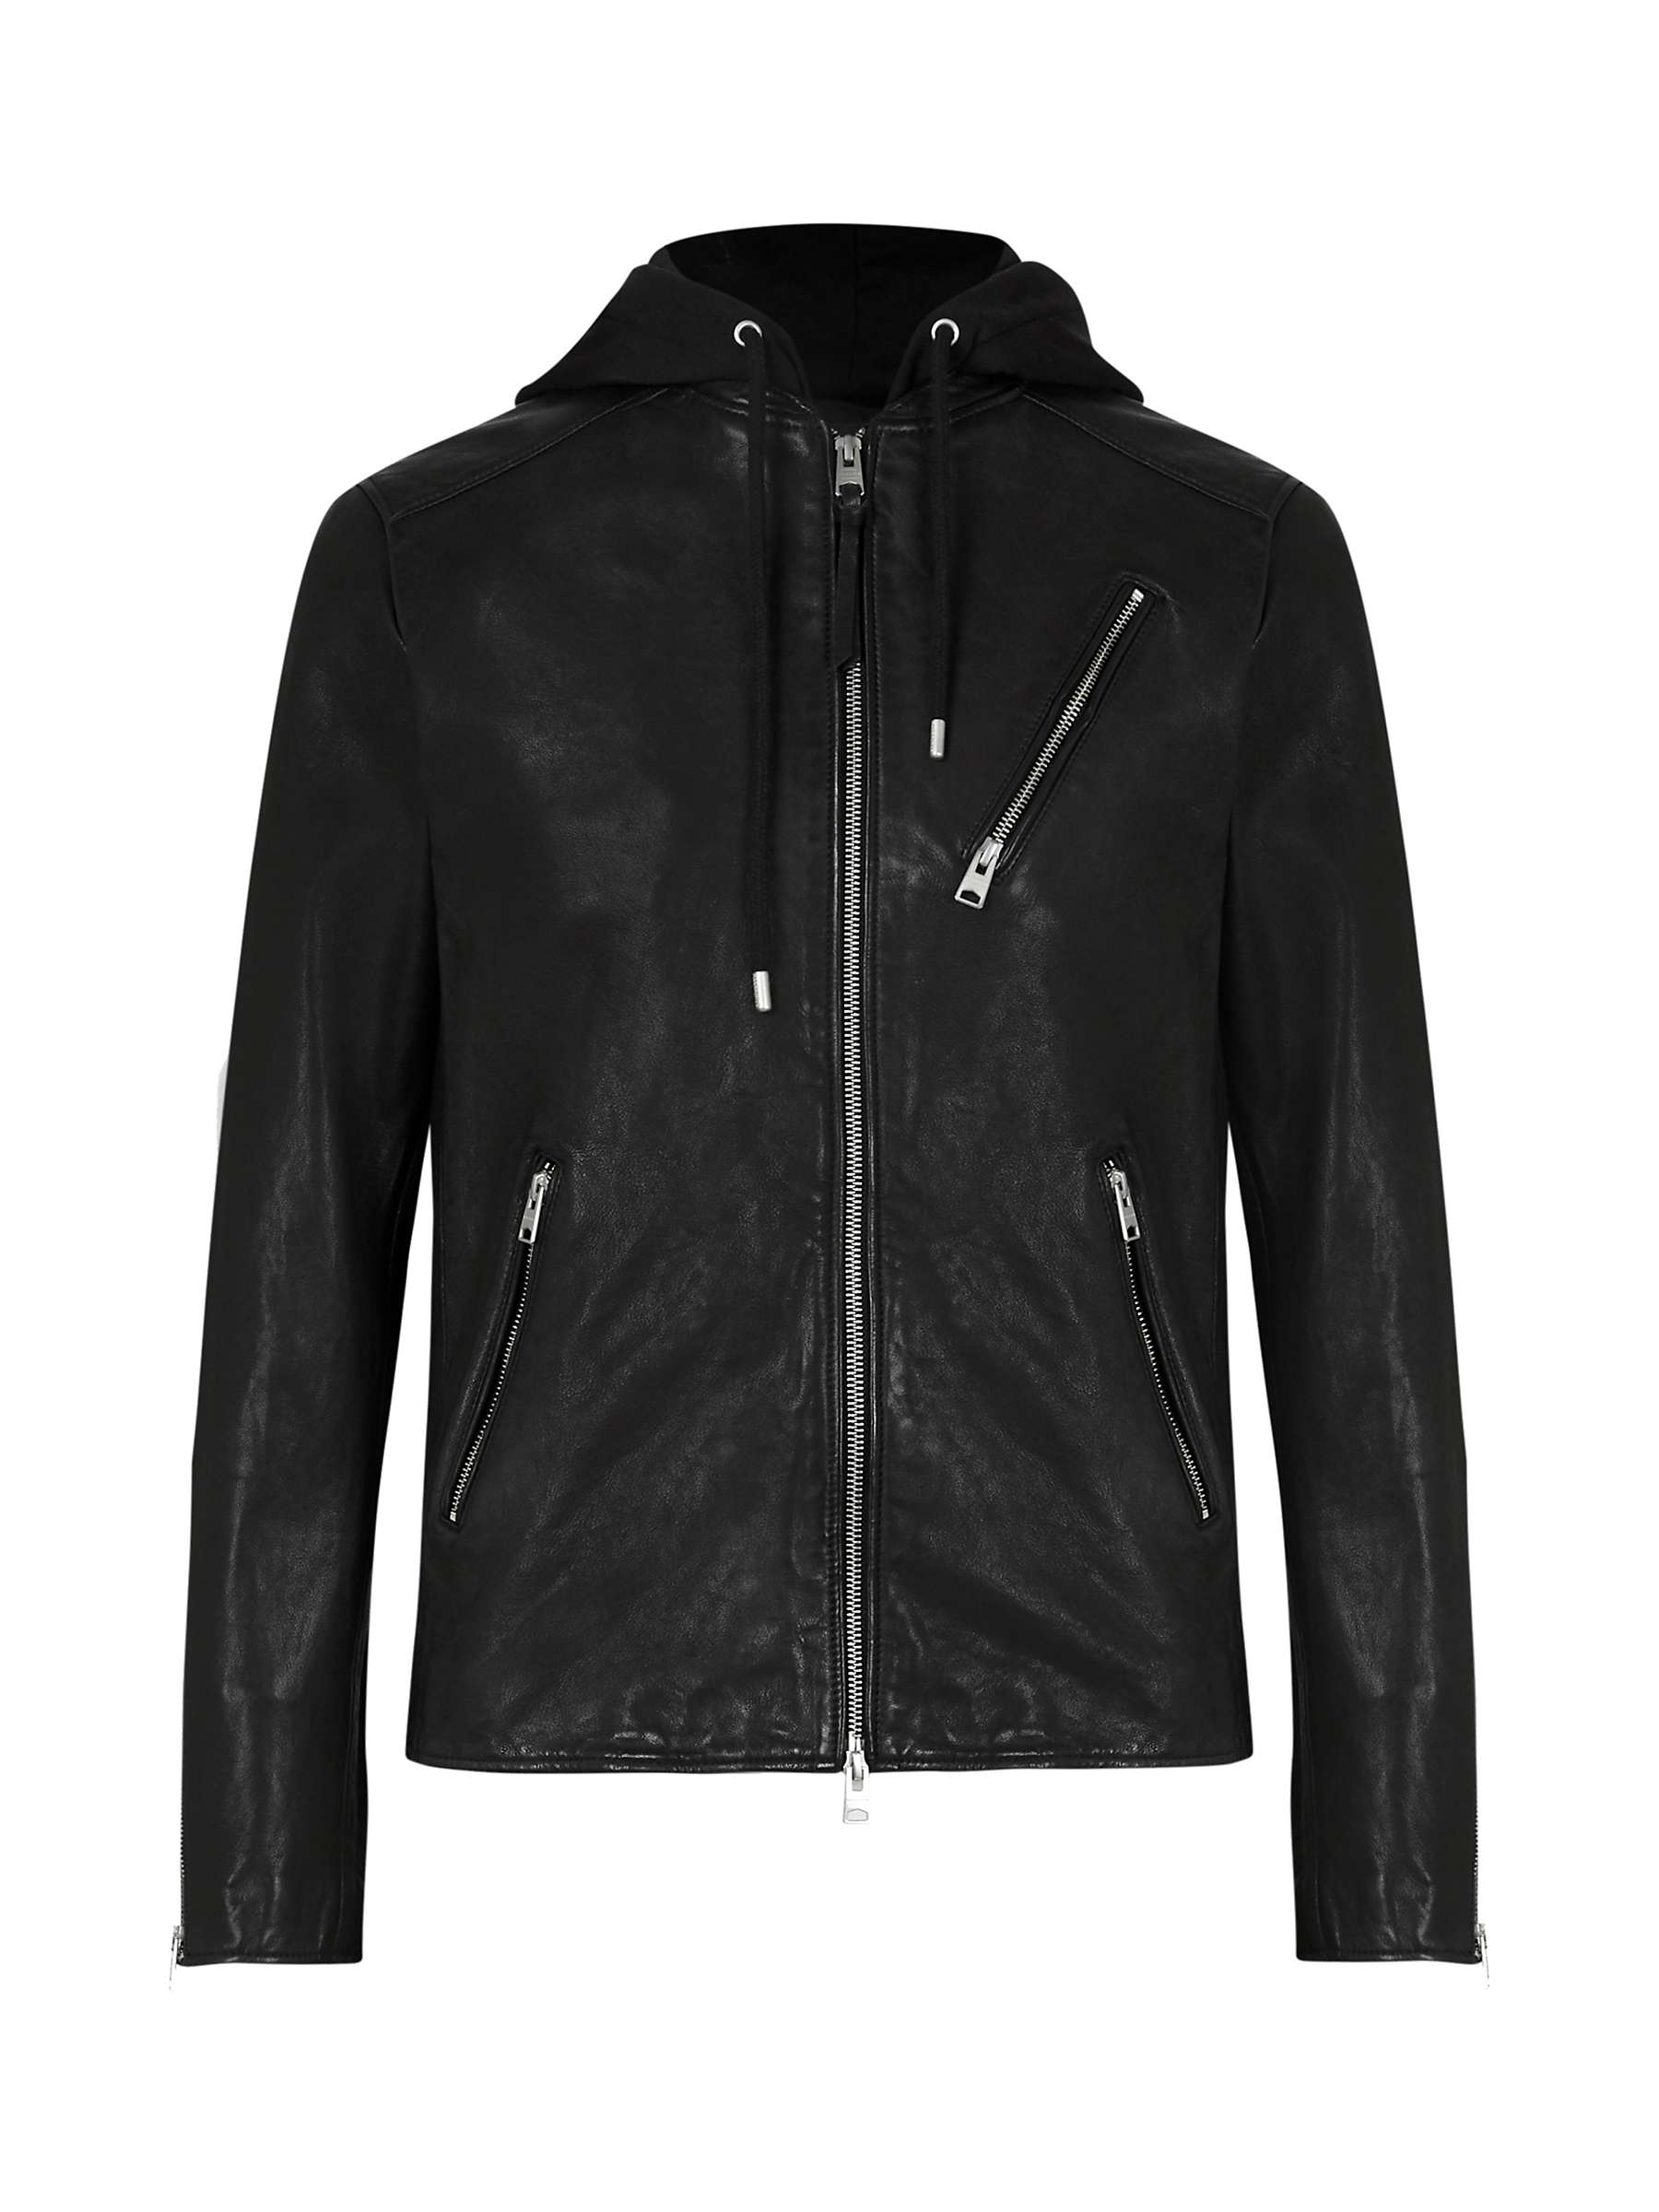 Buy AllSaints Harwood Jacket, Black Online at johnlewis.com